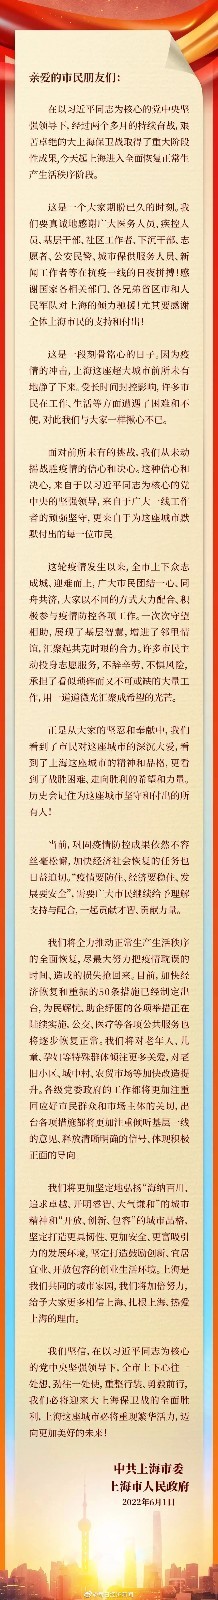 上海市委市政府致全市人民的感谢信